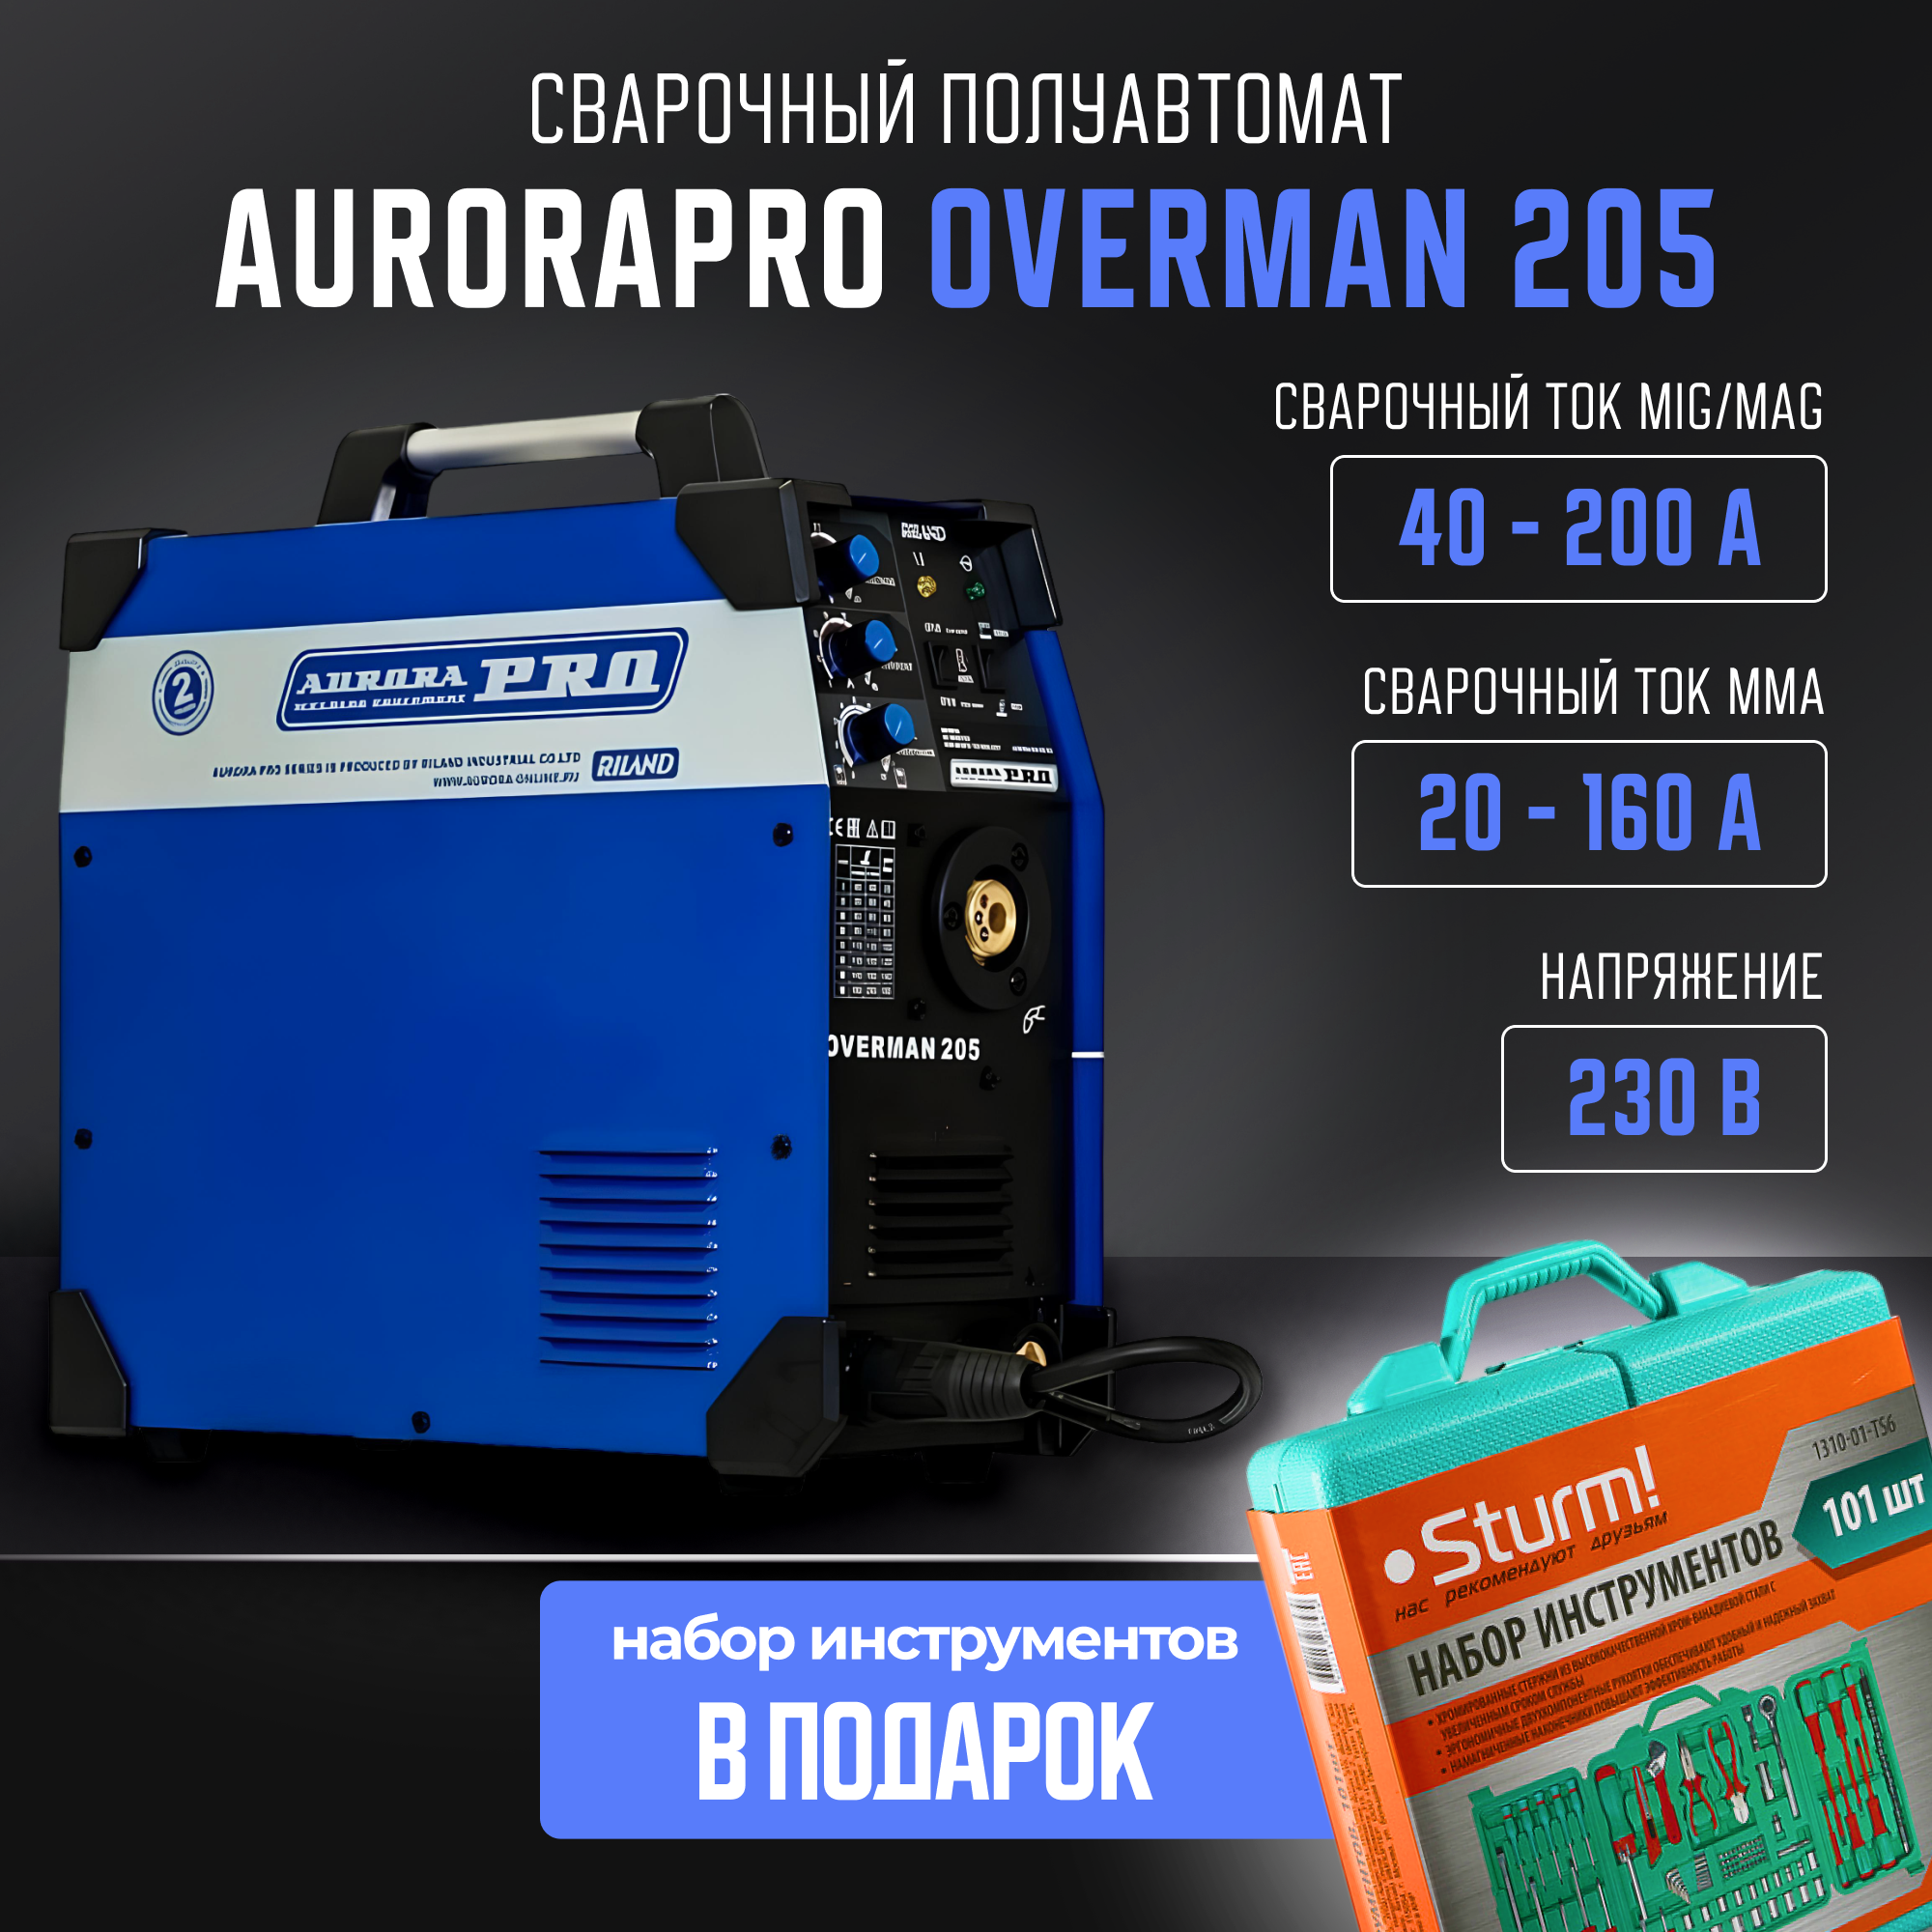 Сварочный полуавтомат Aurora OVERMAN 205 MIG MAG MMA (7226644)+Набор инструментов 101 пр. сварочный полуавтомат aurora overman 200